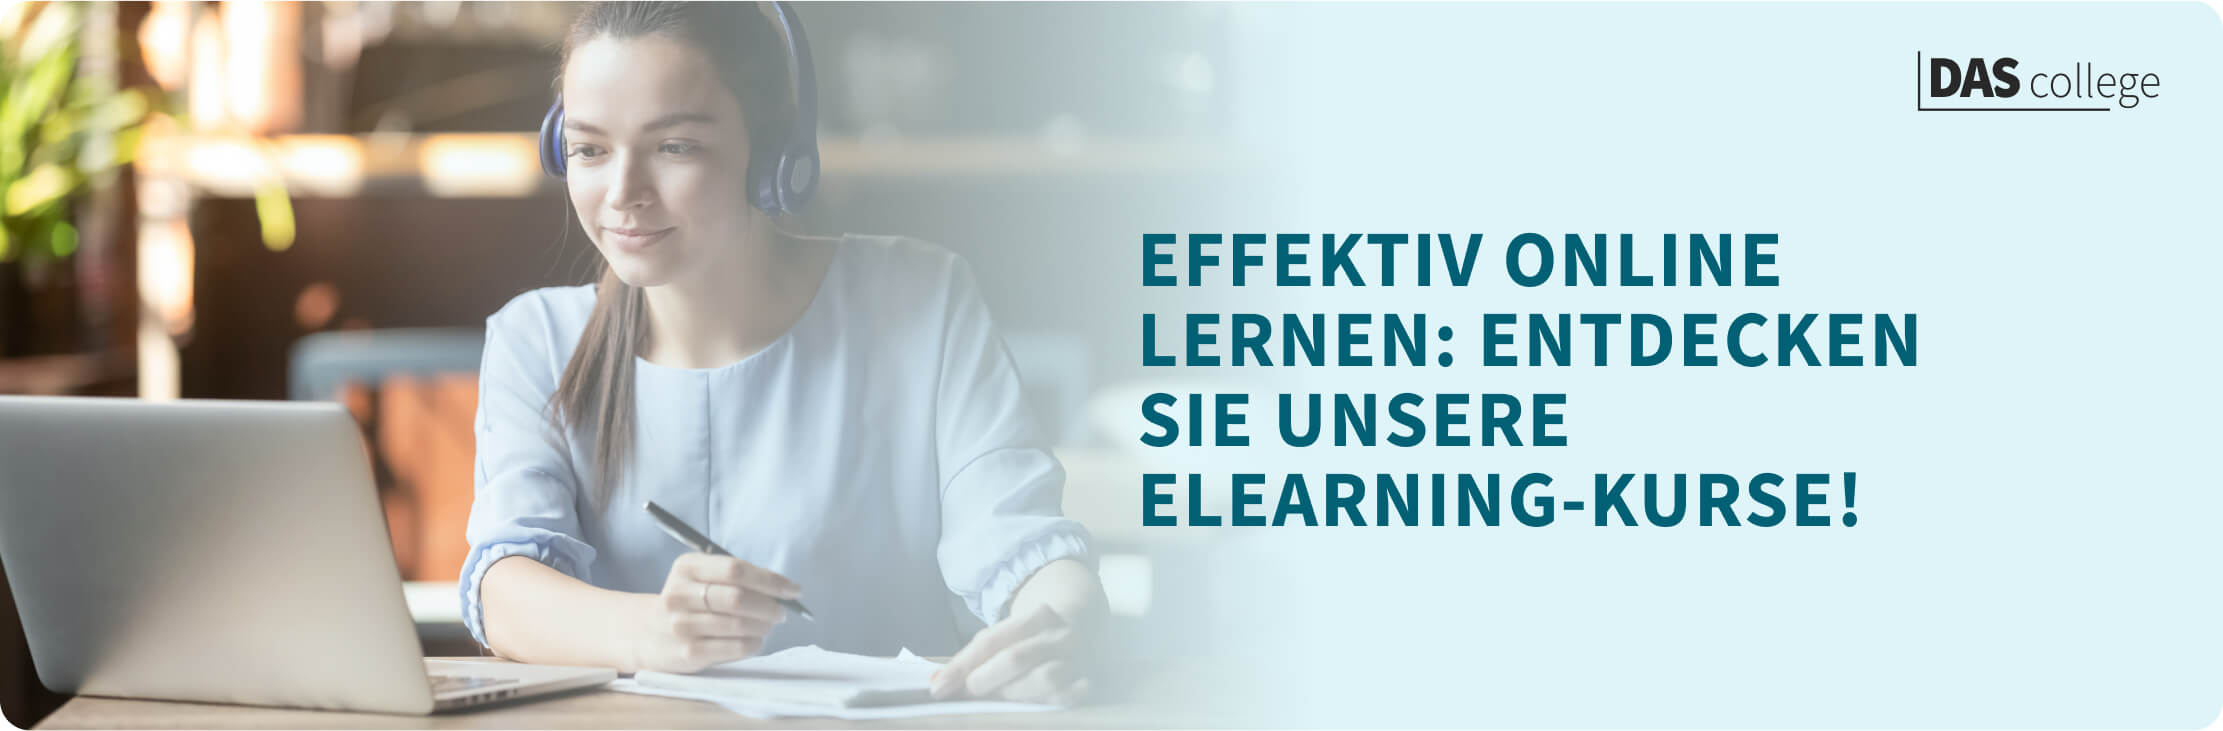 Effektiv online lernen: Entdecken Sie unsere eLearning-Kurse!